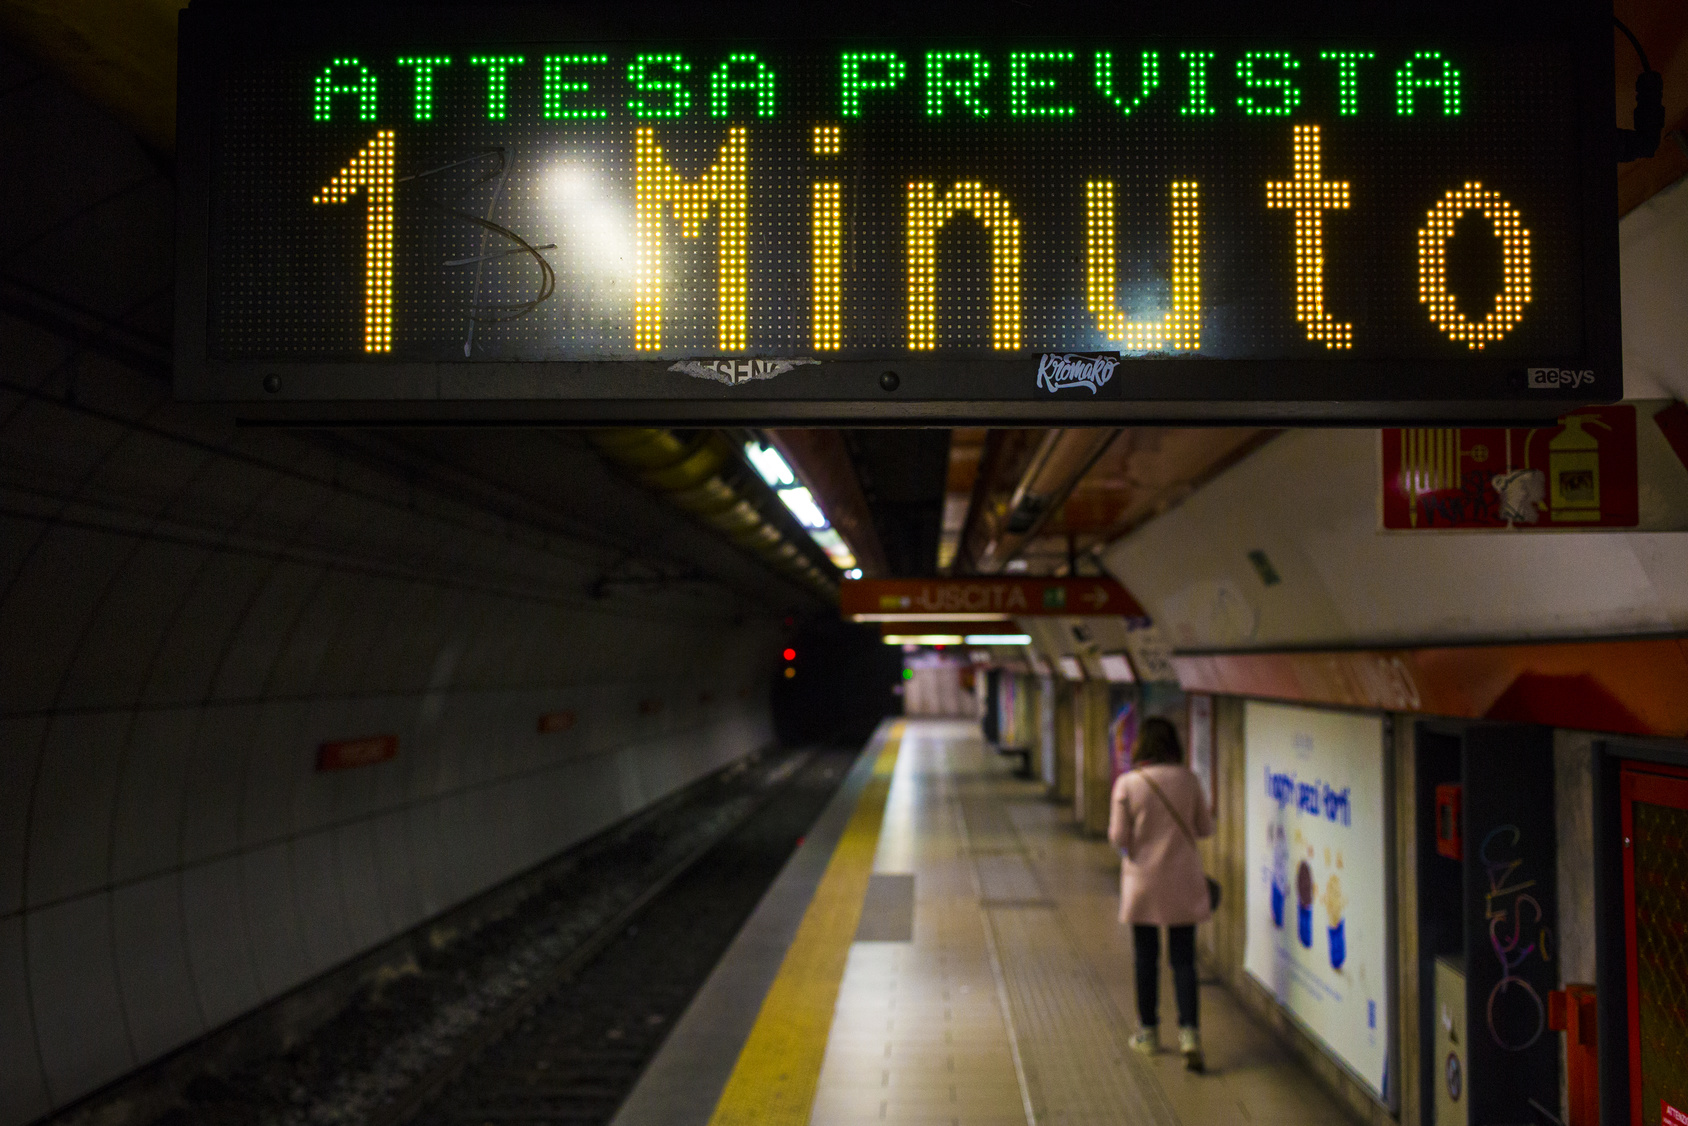 Moverse por Roma en metro: el tiempo medio de espera en los días laborables es de 5 minutos. El doble de tiempo en los festivos.